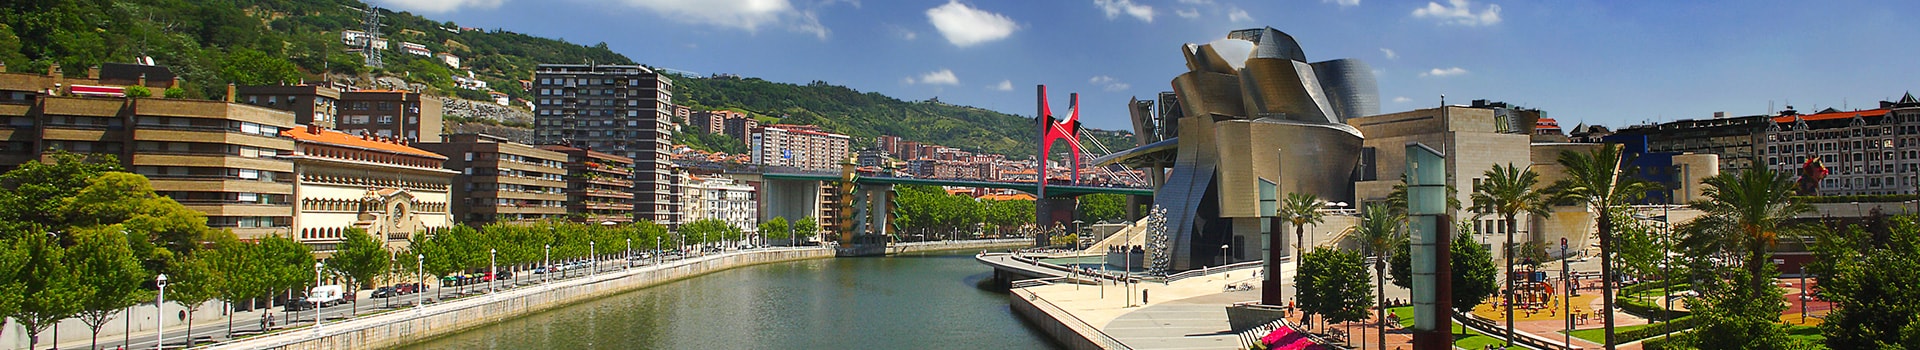 Saint-Jacques-de-Compostelle - Bilbao